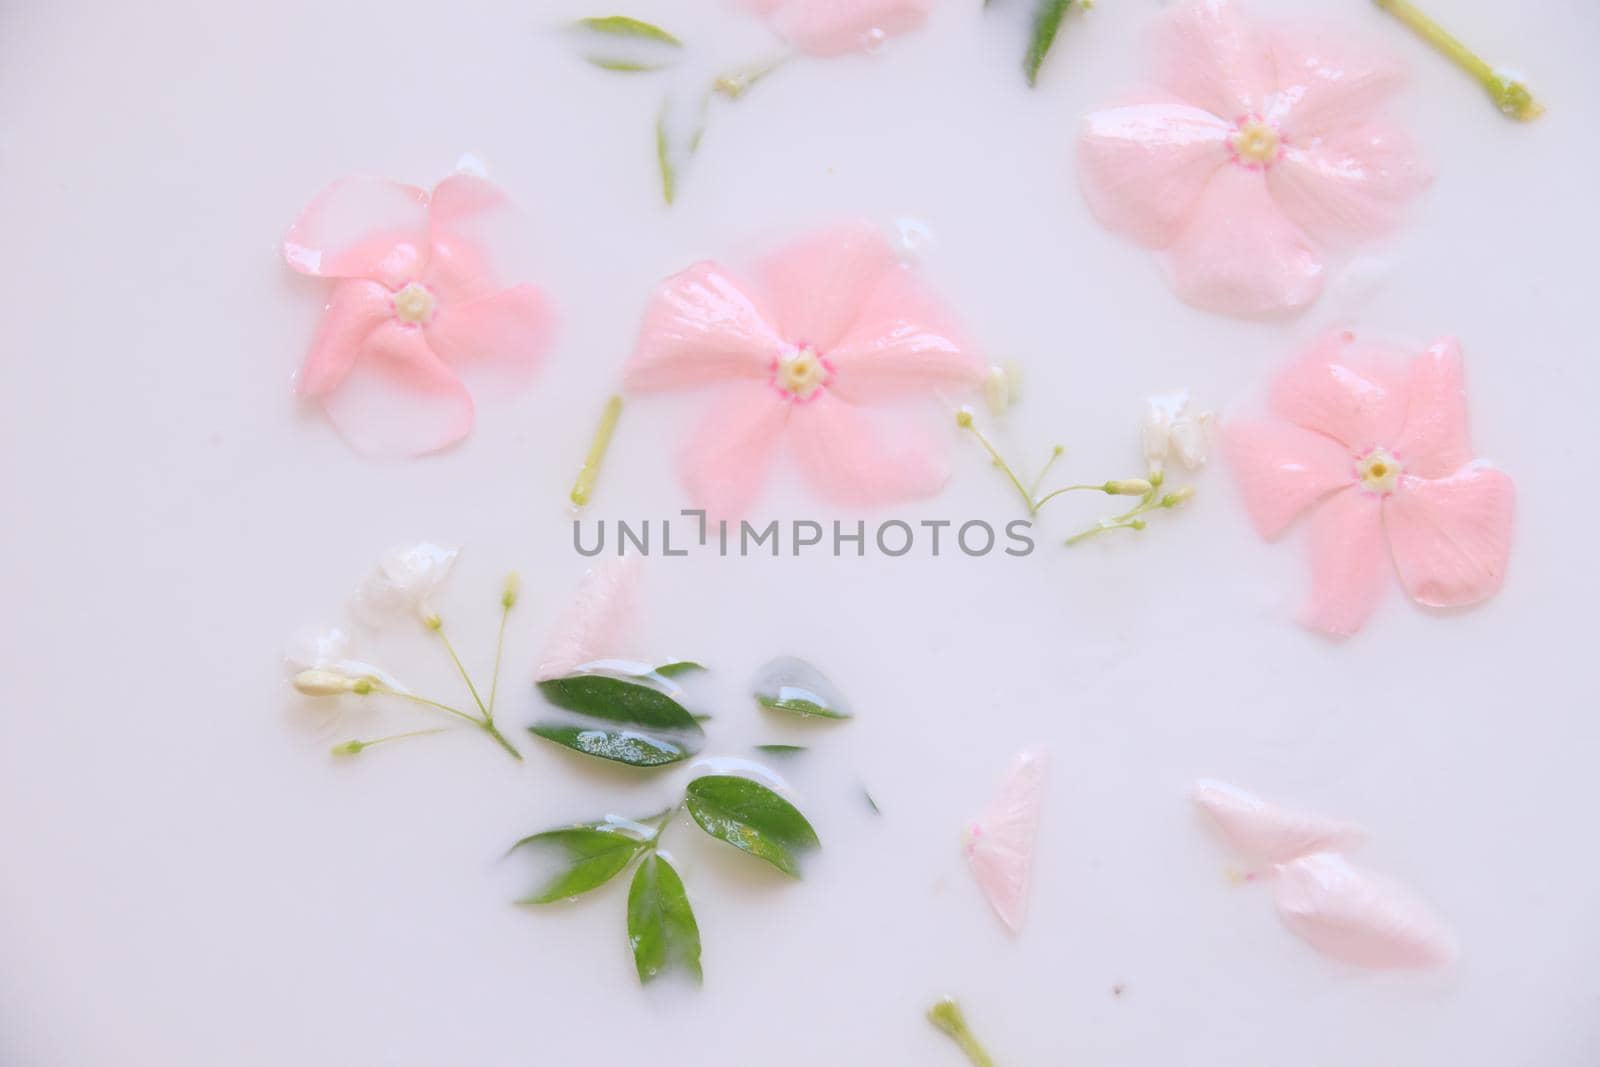 Flowers in a milk bath by Sonnet15